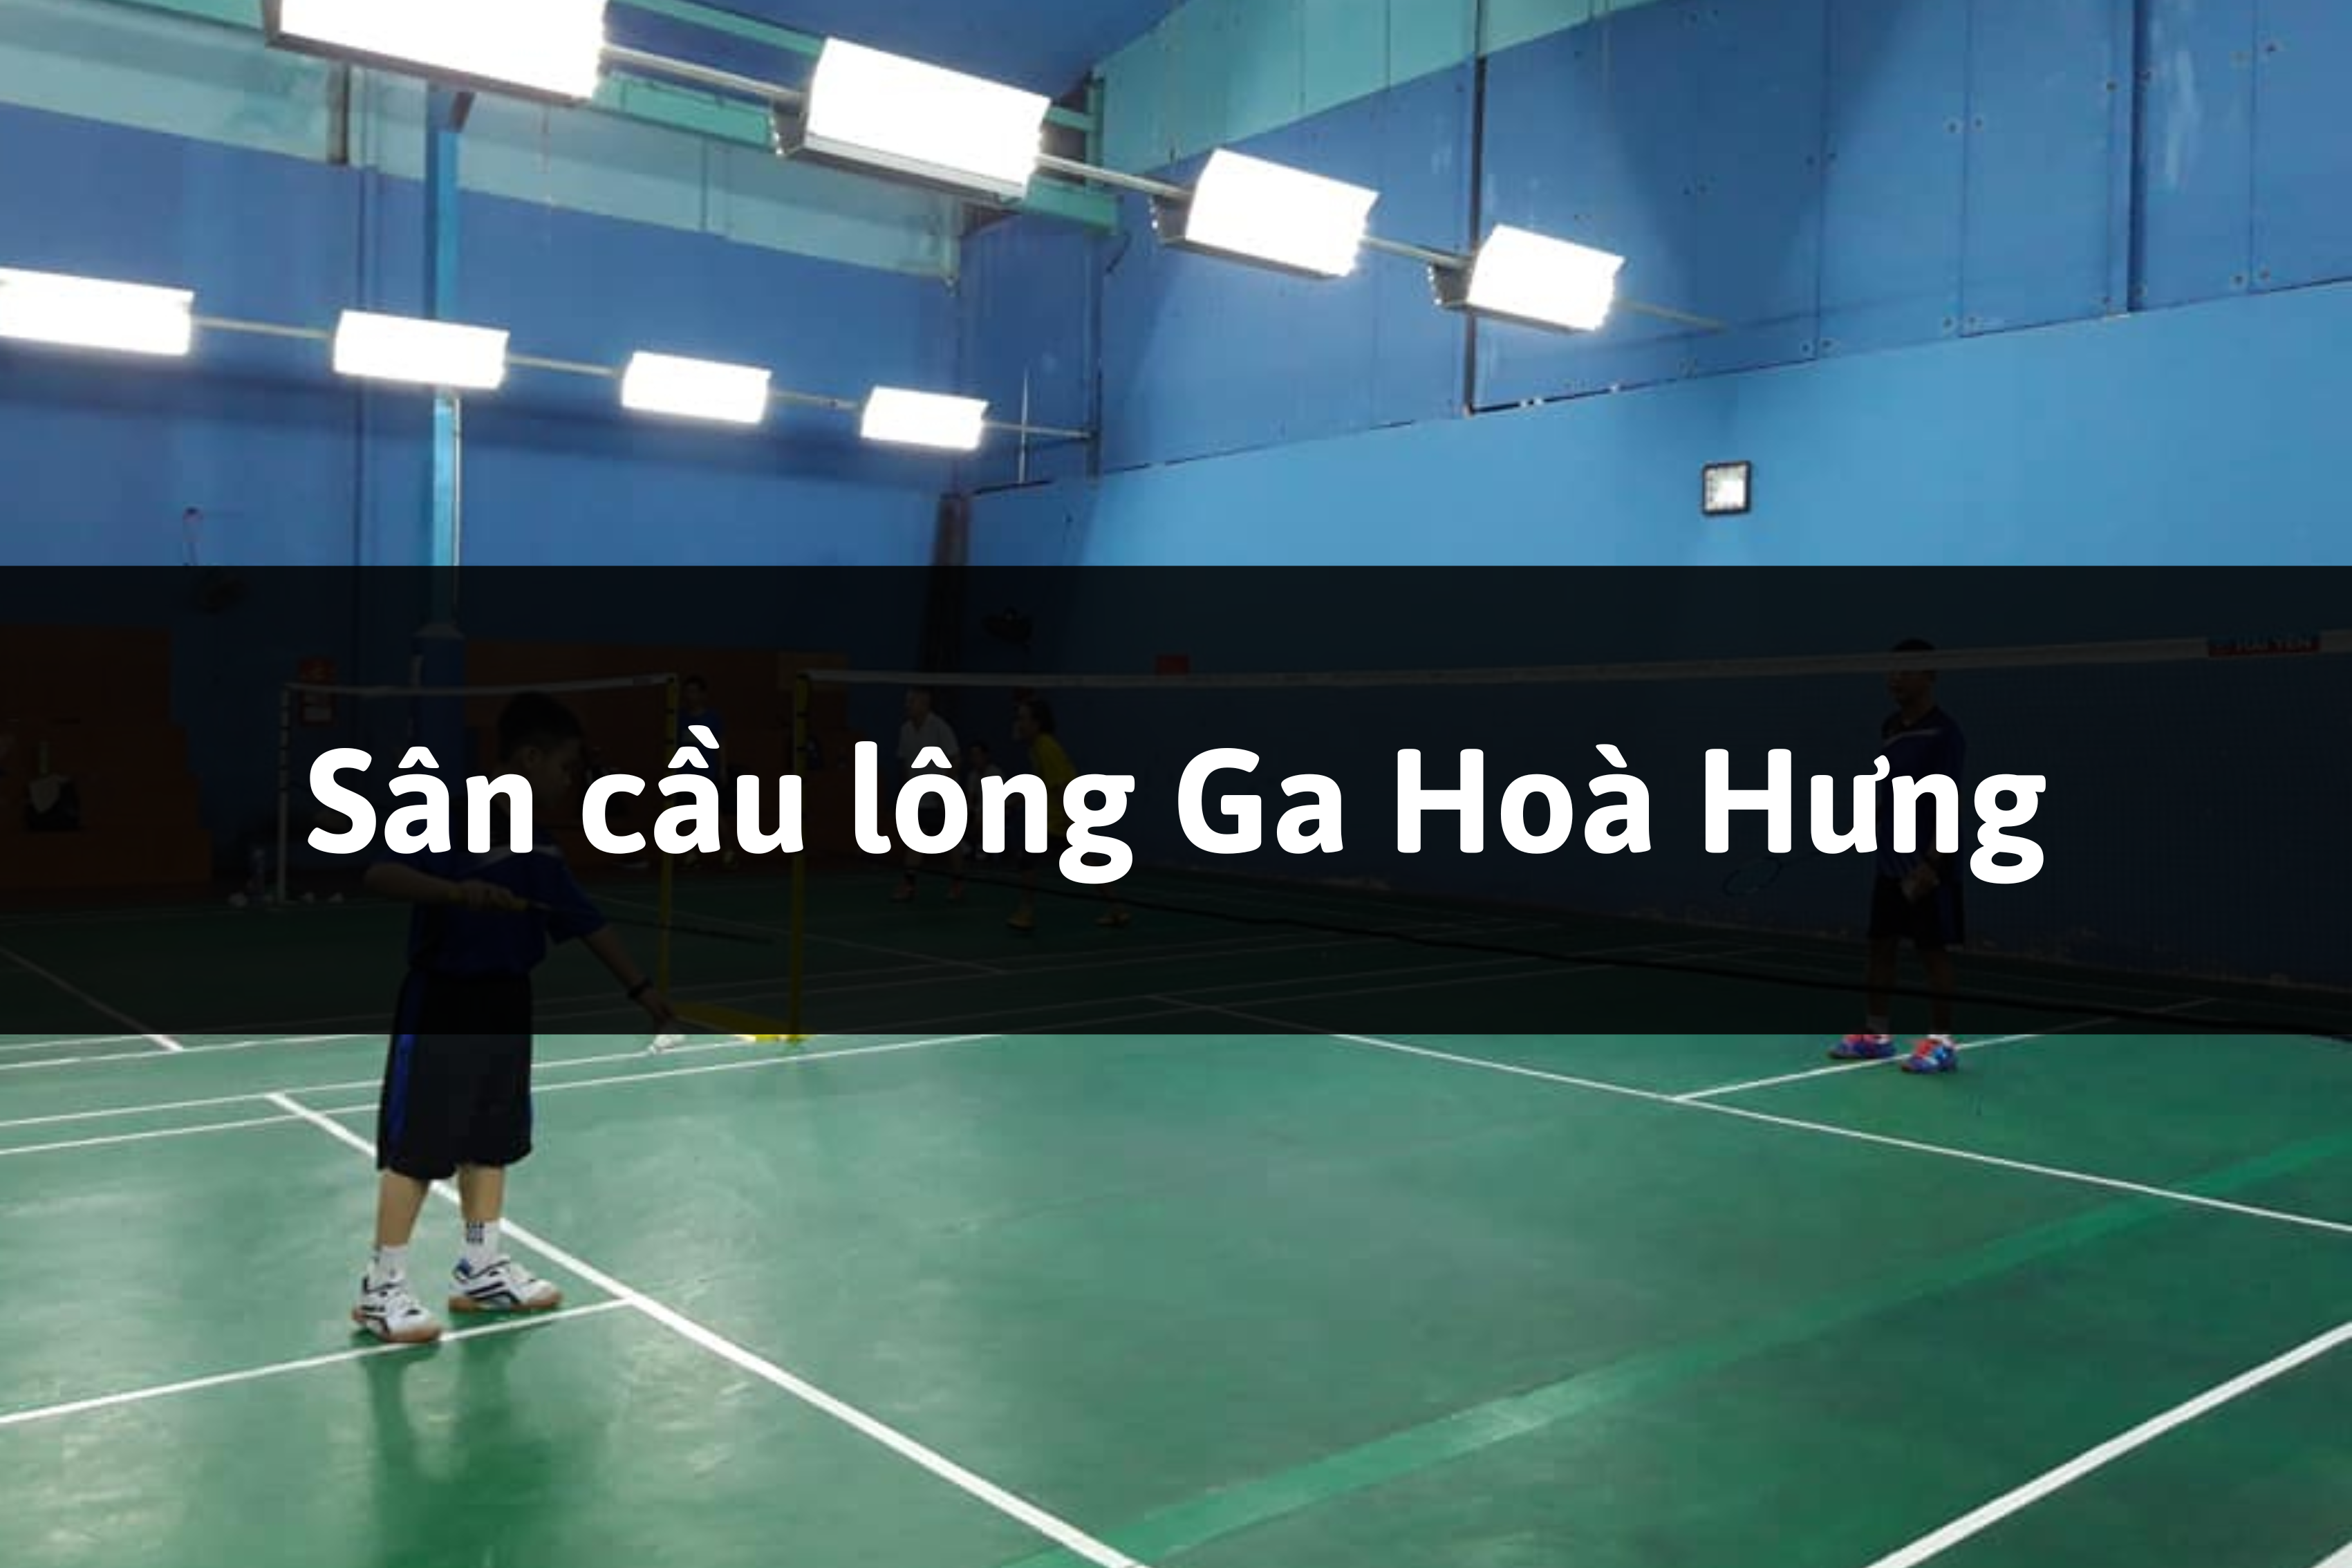 Sân cầu lông Ga Hoà Hưng, Quận 3, Thành phố Hồ Chí Minh